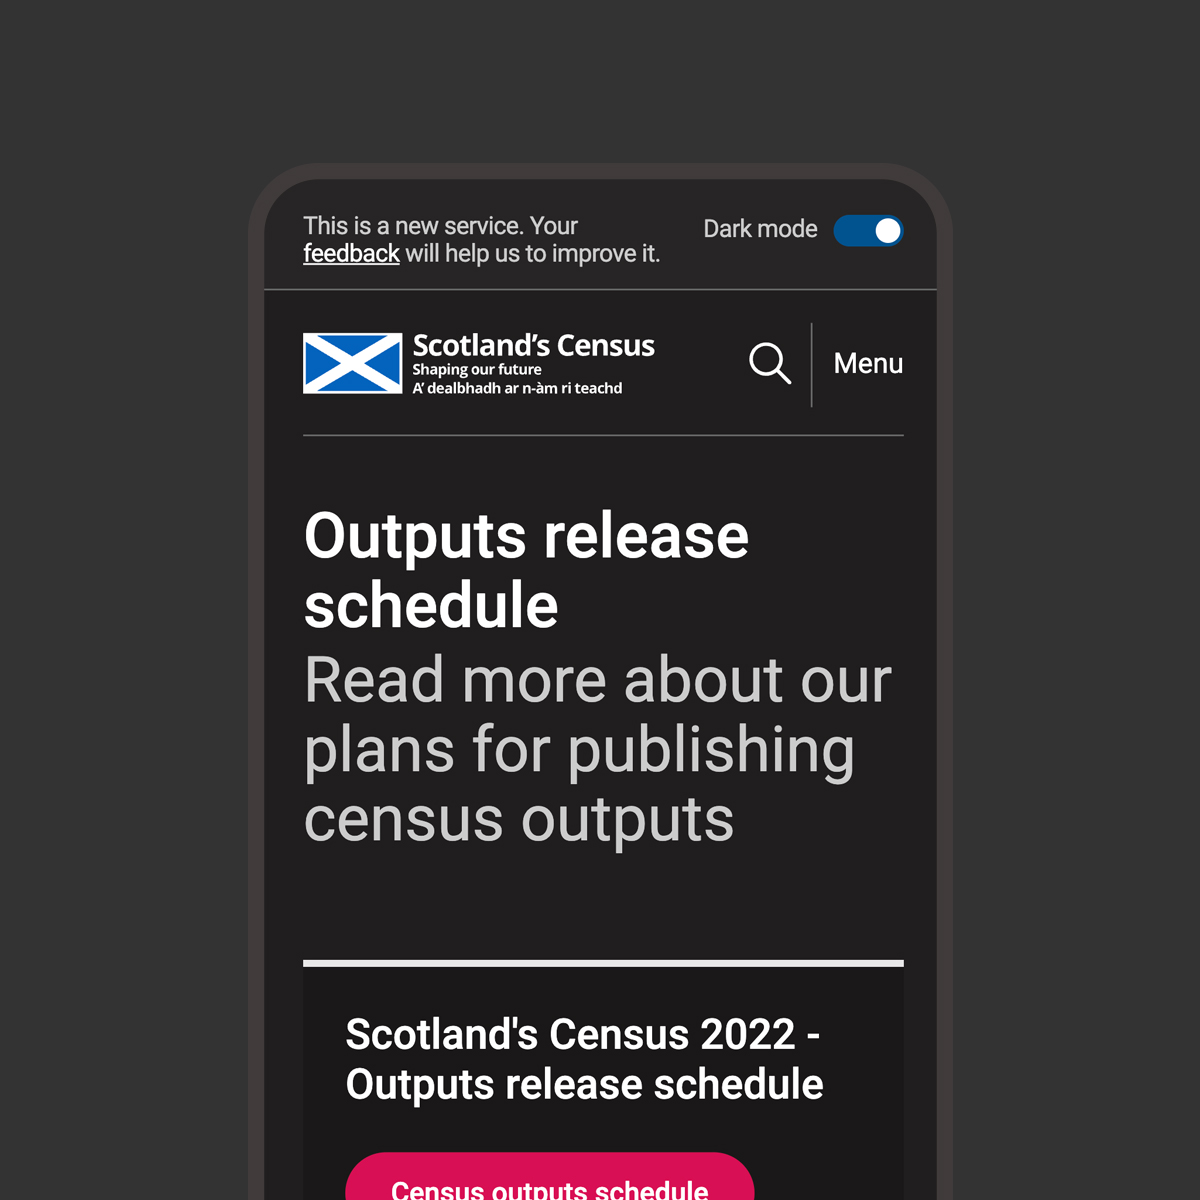 Scotland's Census website page in dark mode